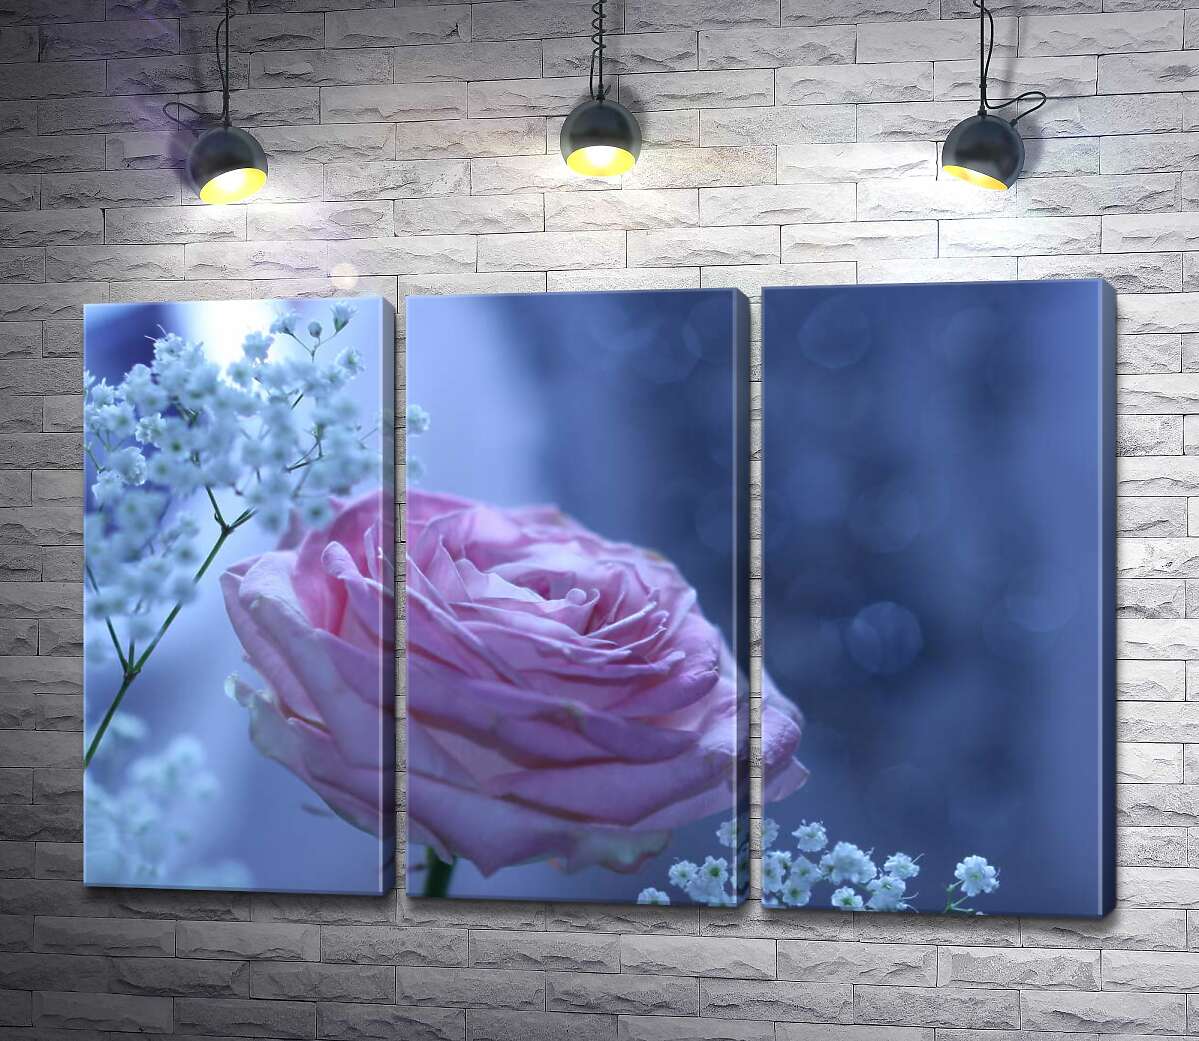 

Модульная картина ArtPoster Розовая роза и белые гипсофилы на морозно-голубом фоне 132x87 см Модуль №11